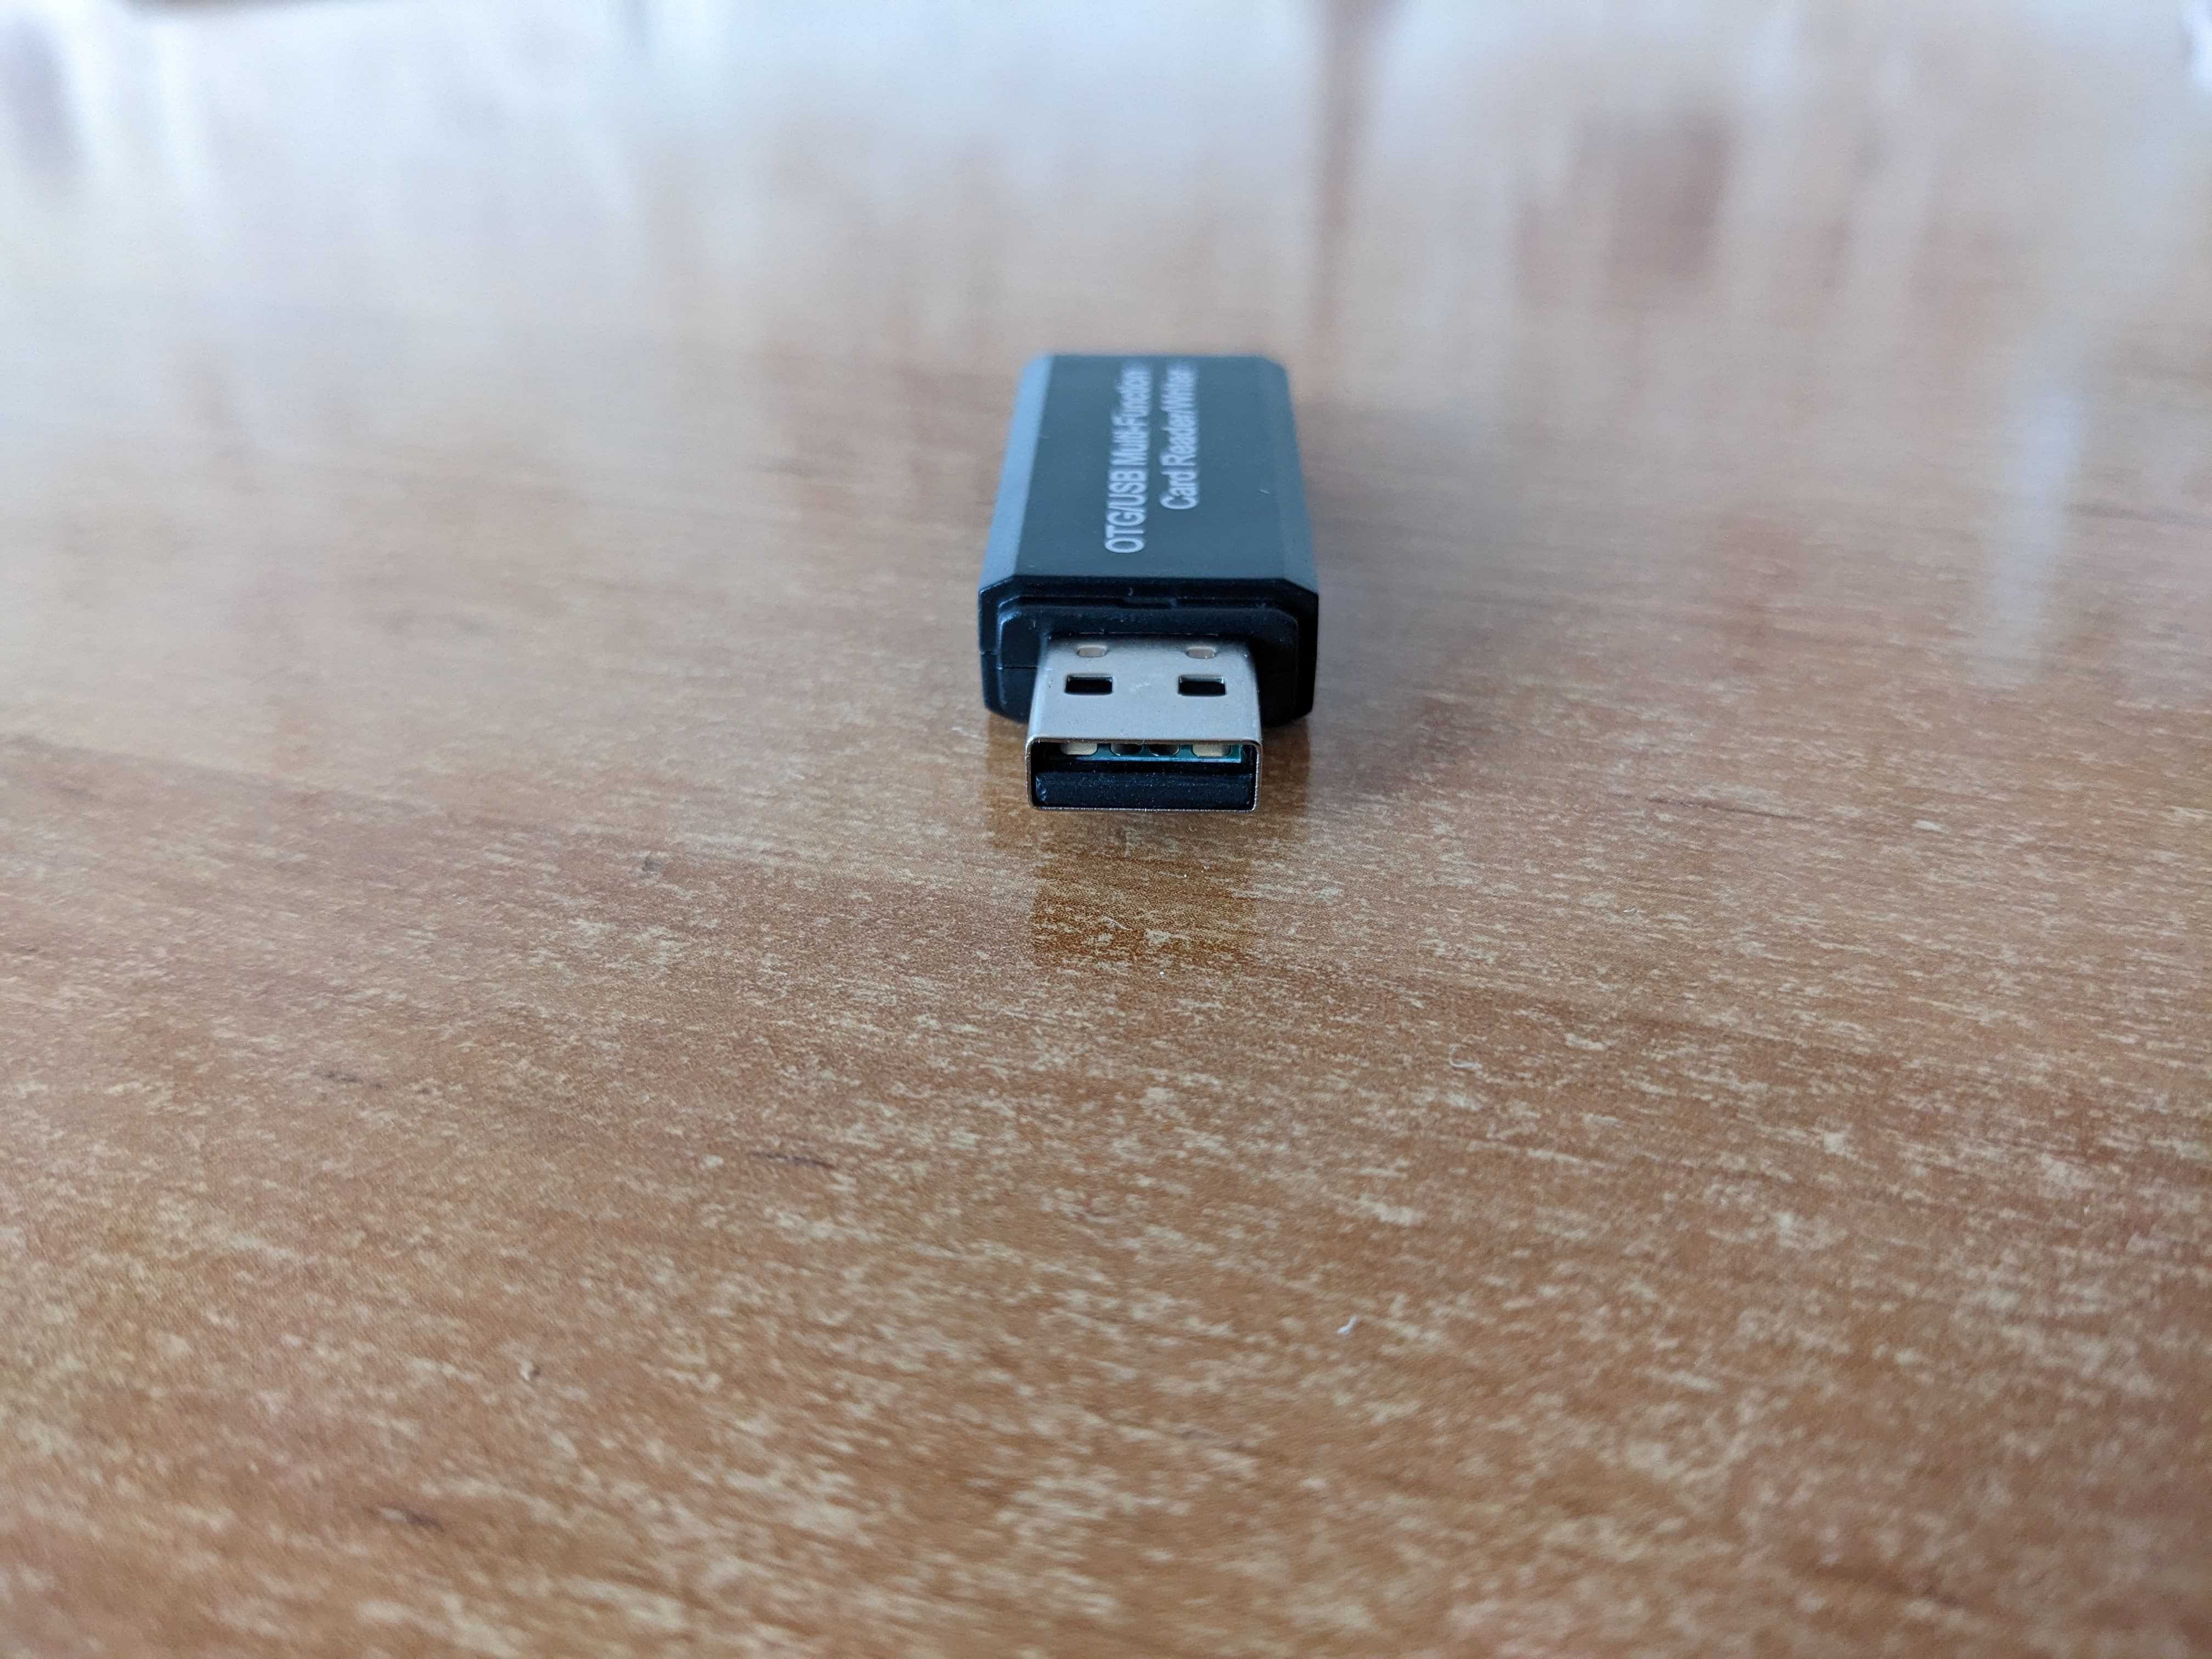 Картридер OTG USB + Micro USB для SD / Micro SD карт